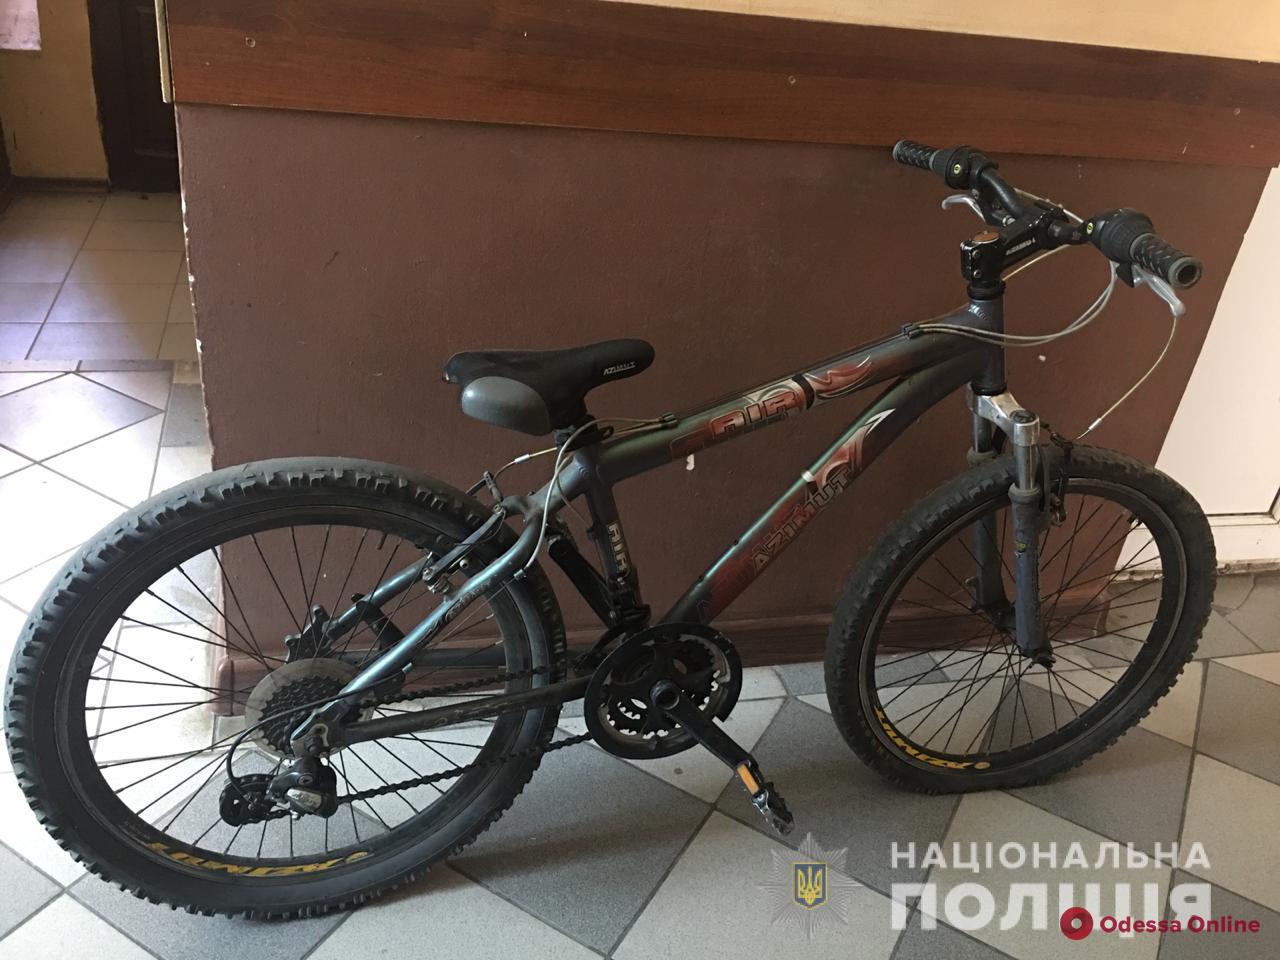 В Одессе вооруженный разбойник отобрал у подростка велосипед